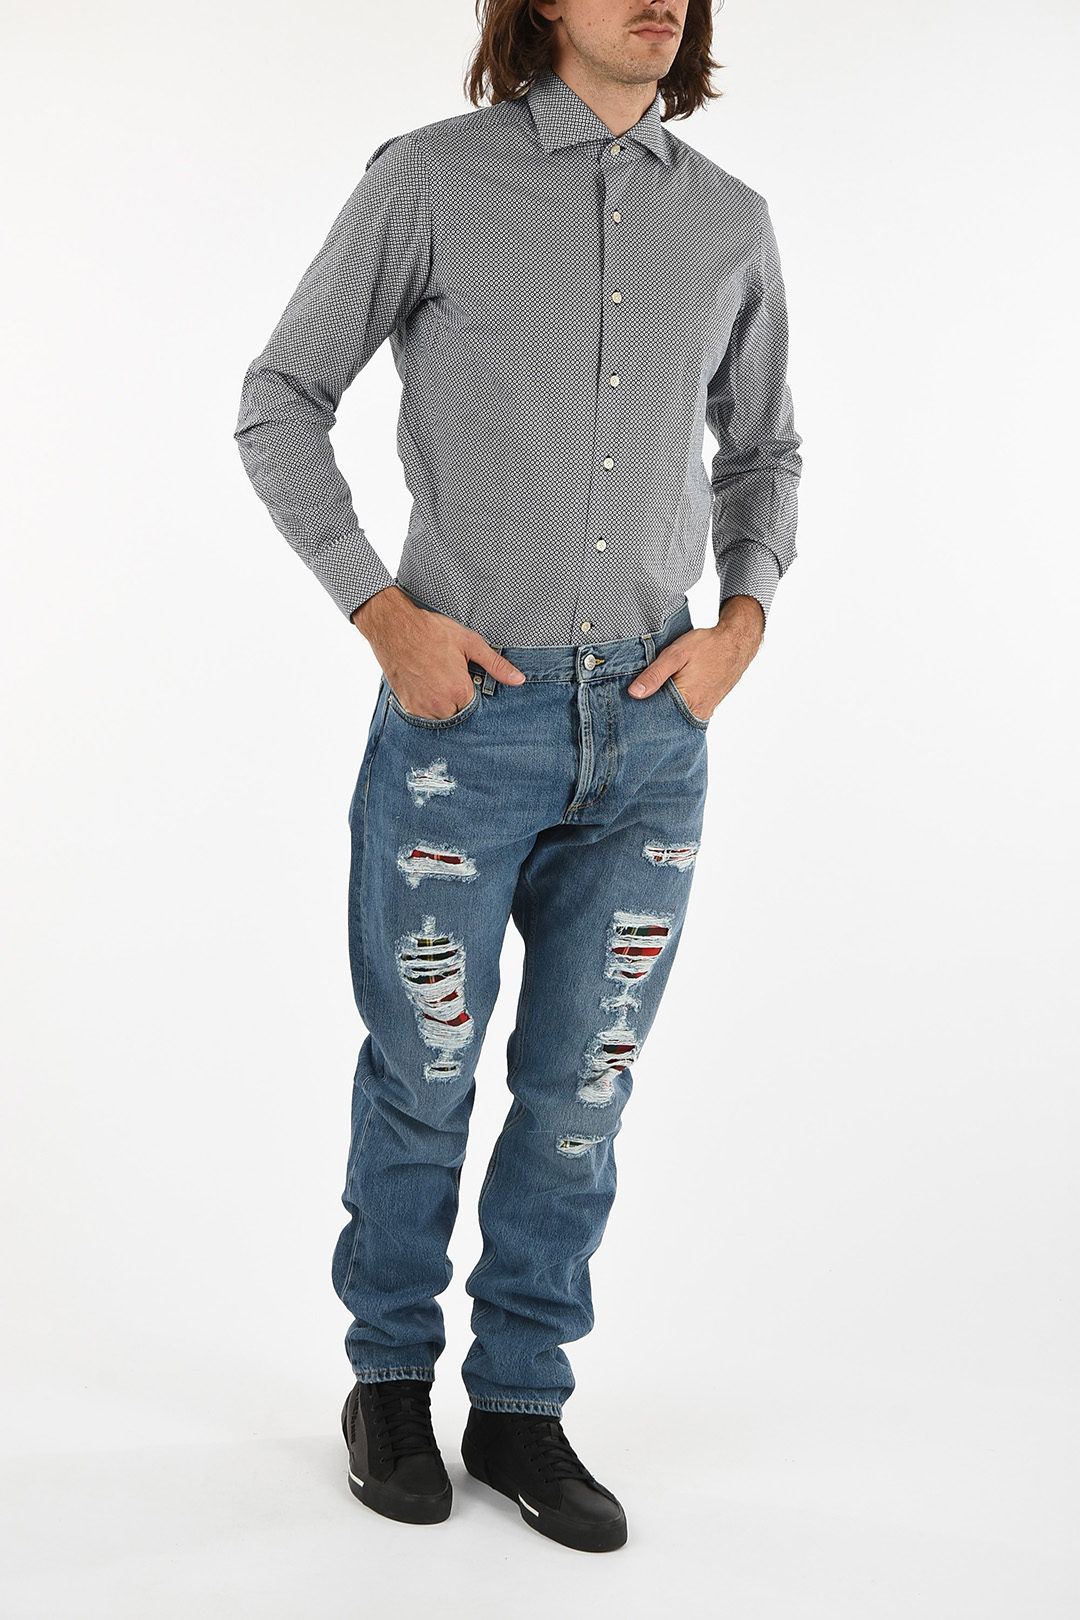 Appal Onenigheid aanpassen Alexander McQueen ripped Low-rise waist jeans men - Glamood Outlet